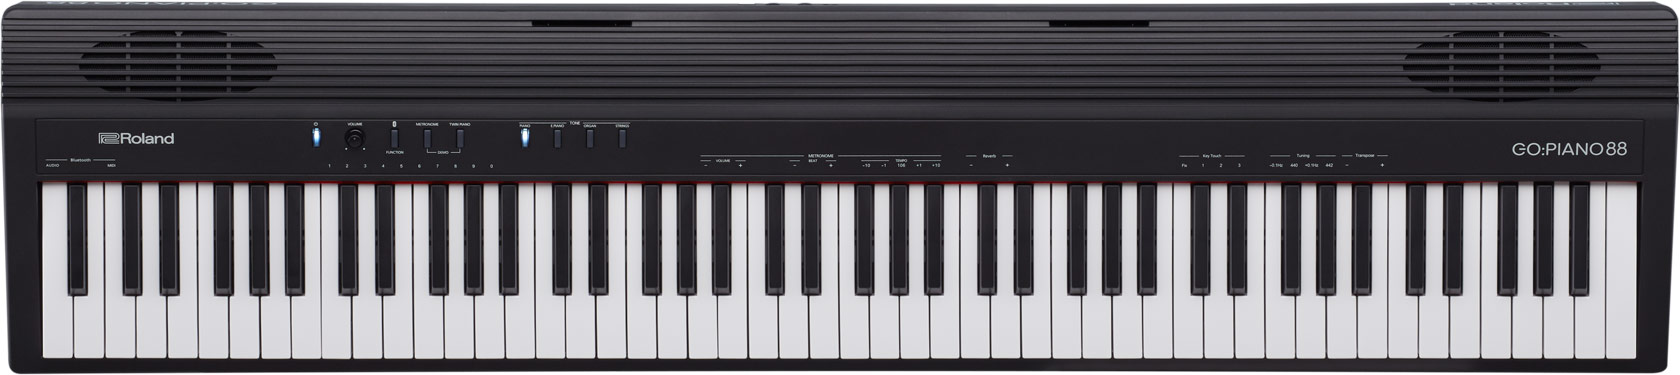 เปียโนไฟฟ้า ROLAND GO PIANO 88